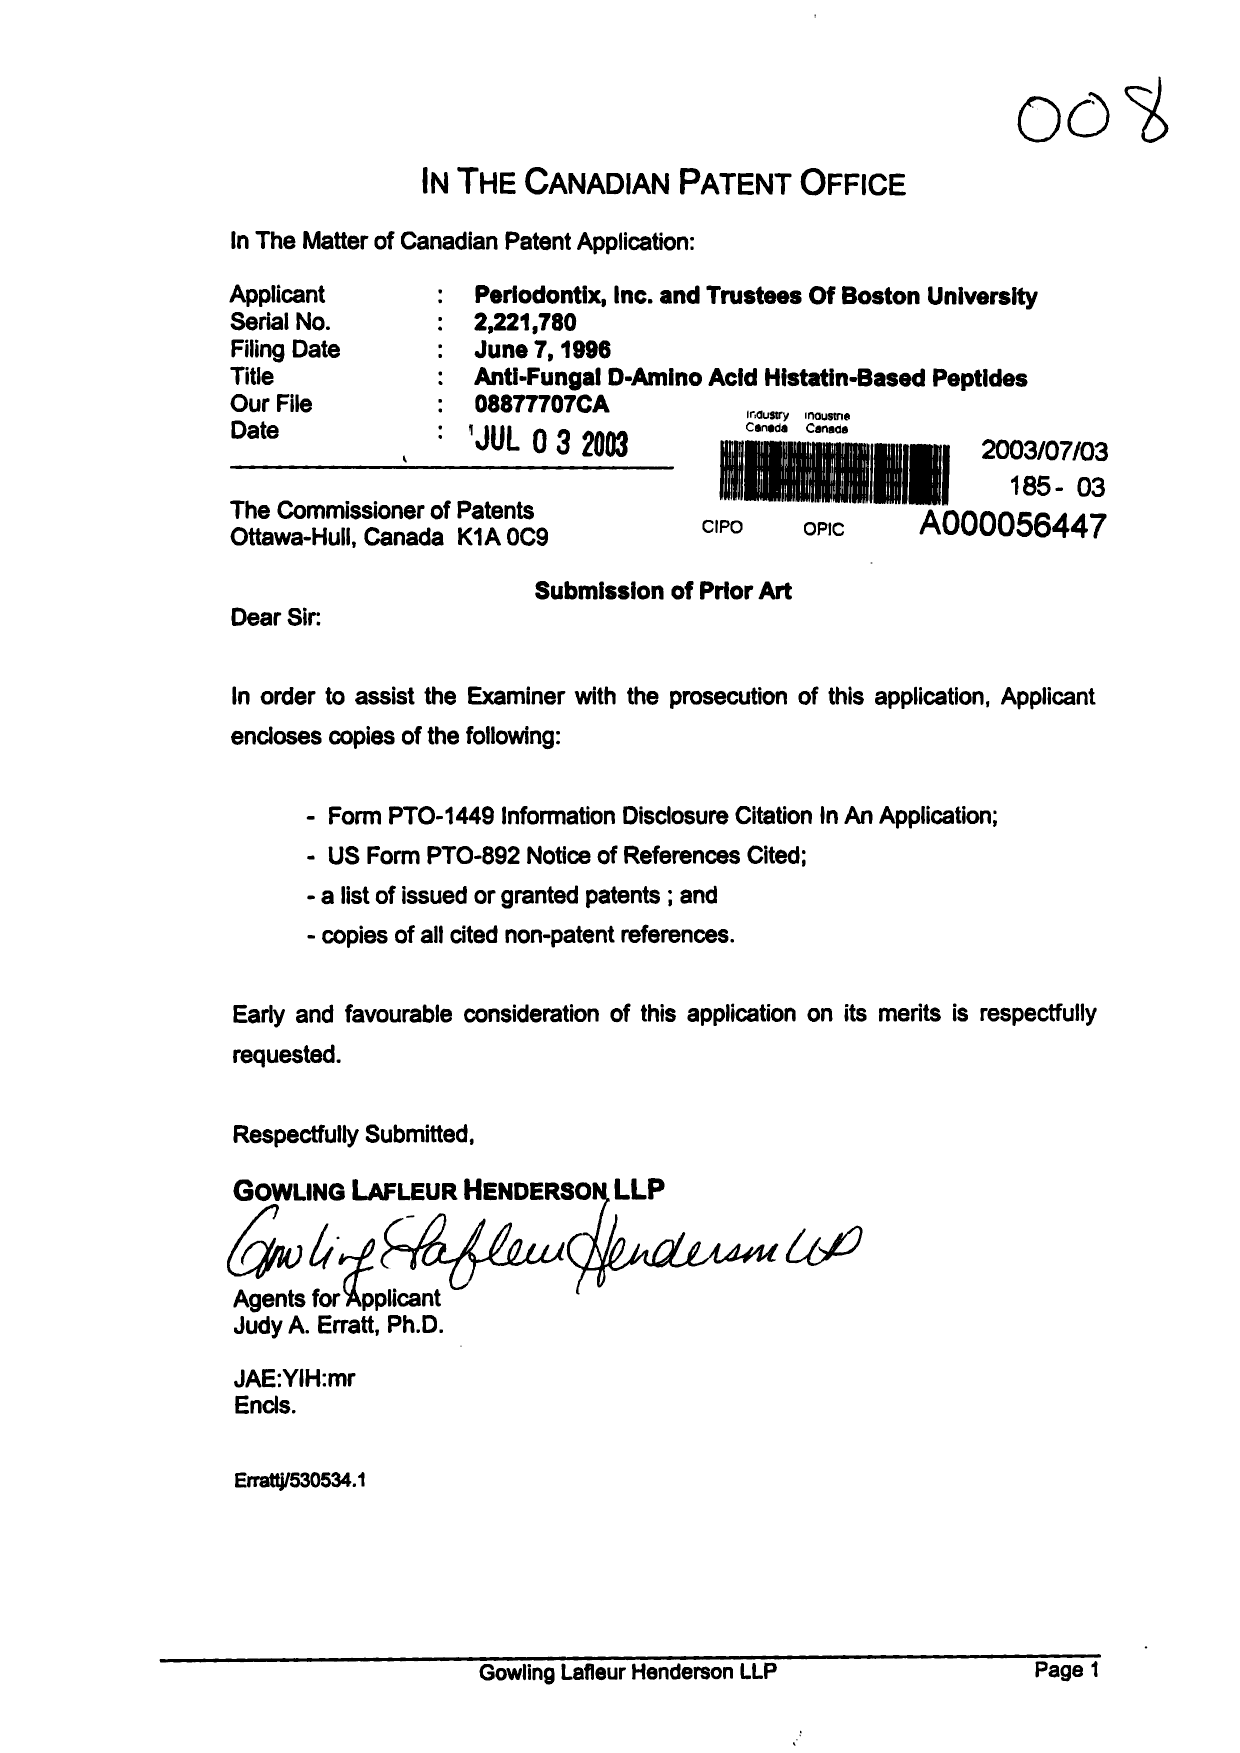 Document de brevet canadien 2221780. Poursuite-Amendment 20030703. Image 1 de 1